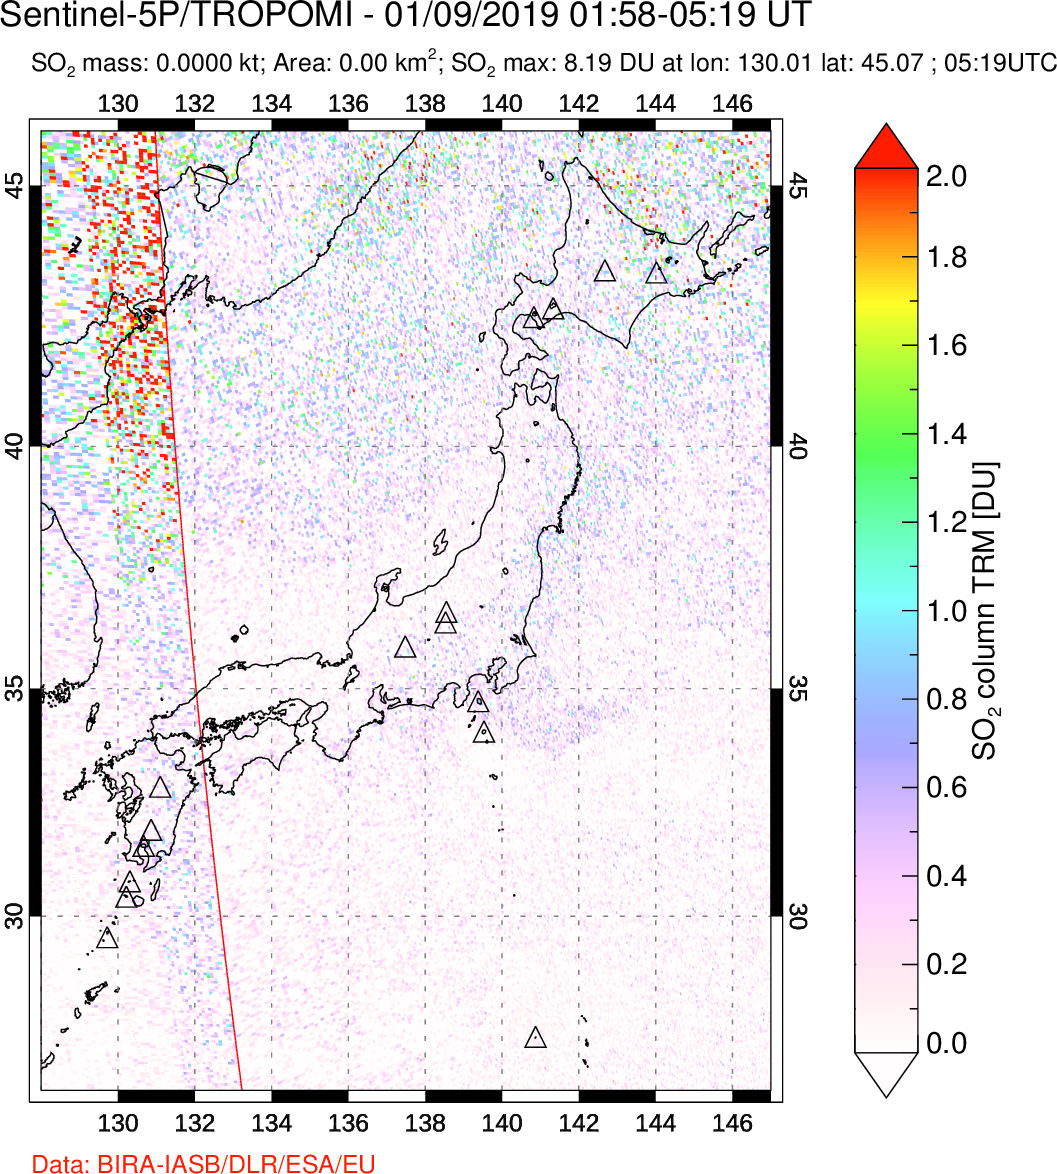 A sulfur dioxide image over Japan on Jan 09, 2019.